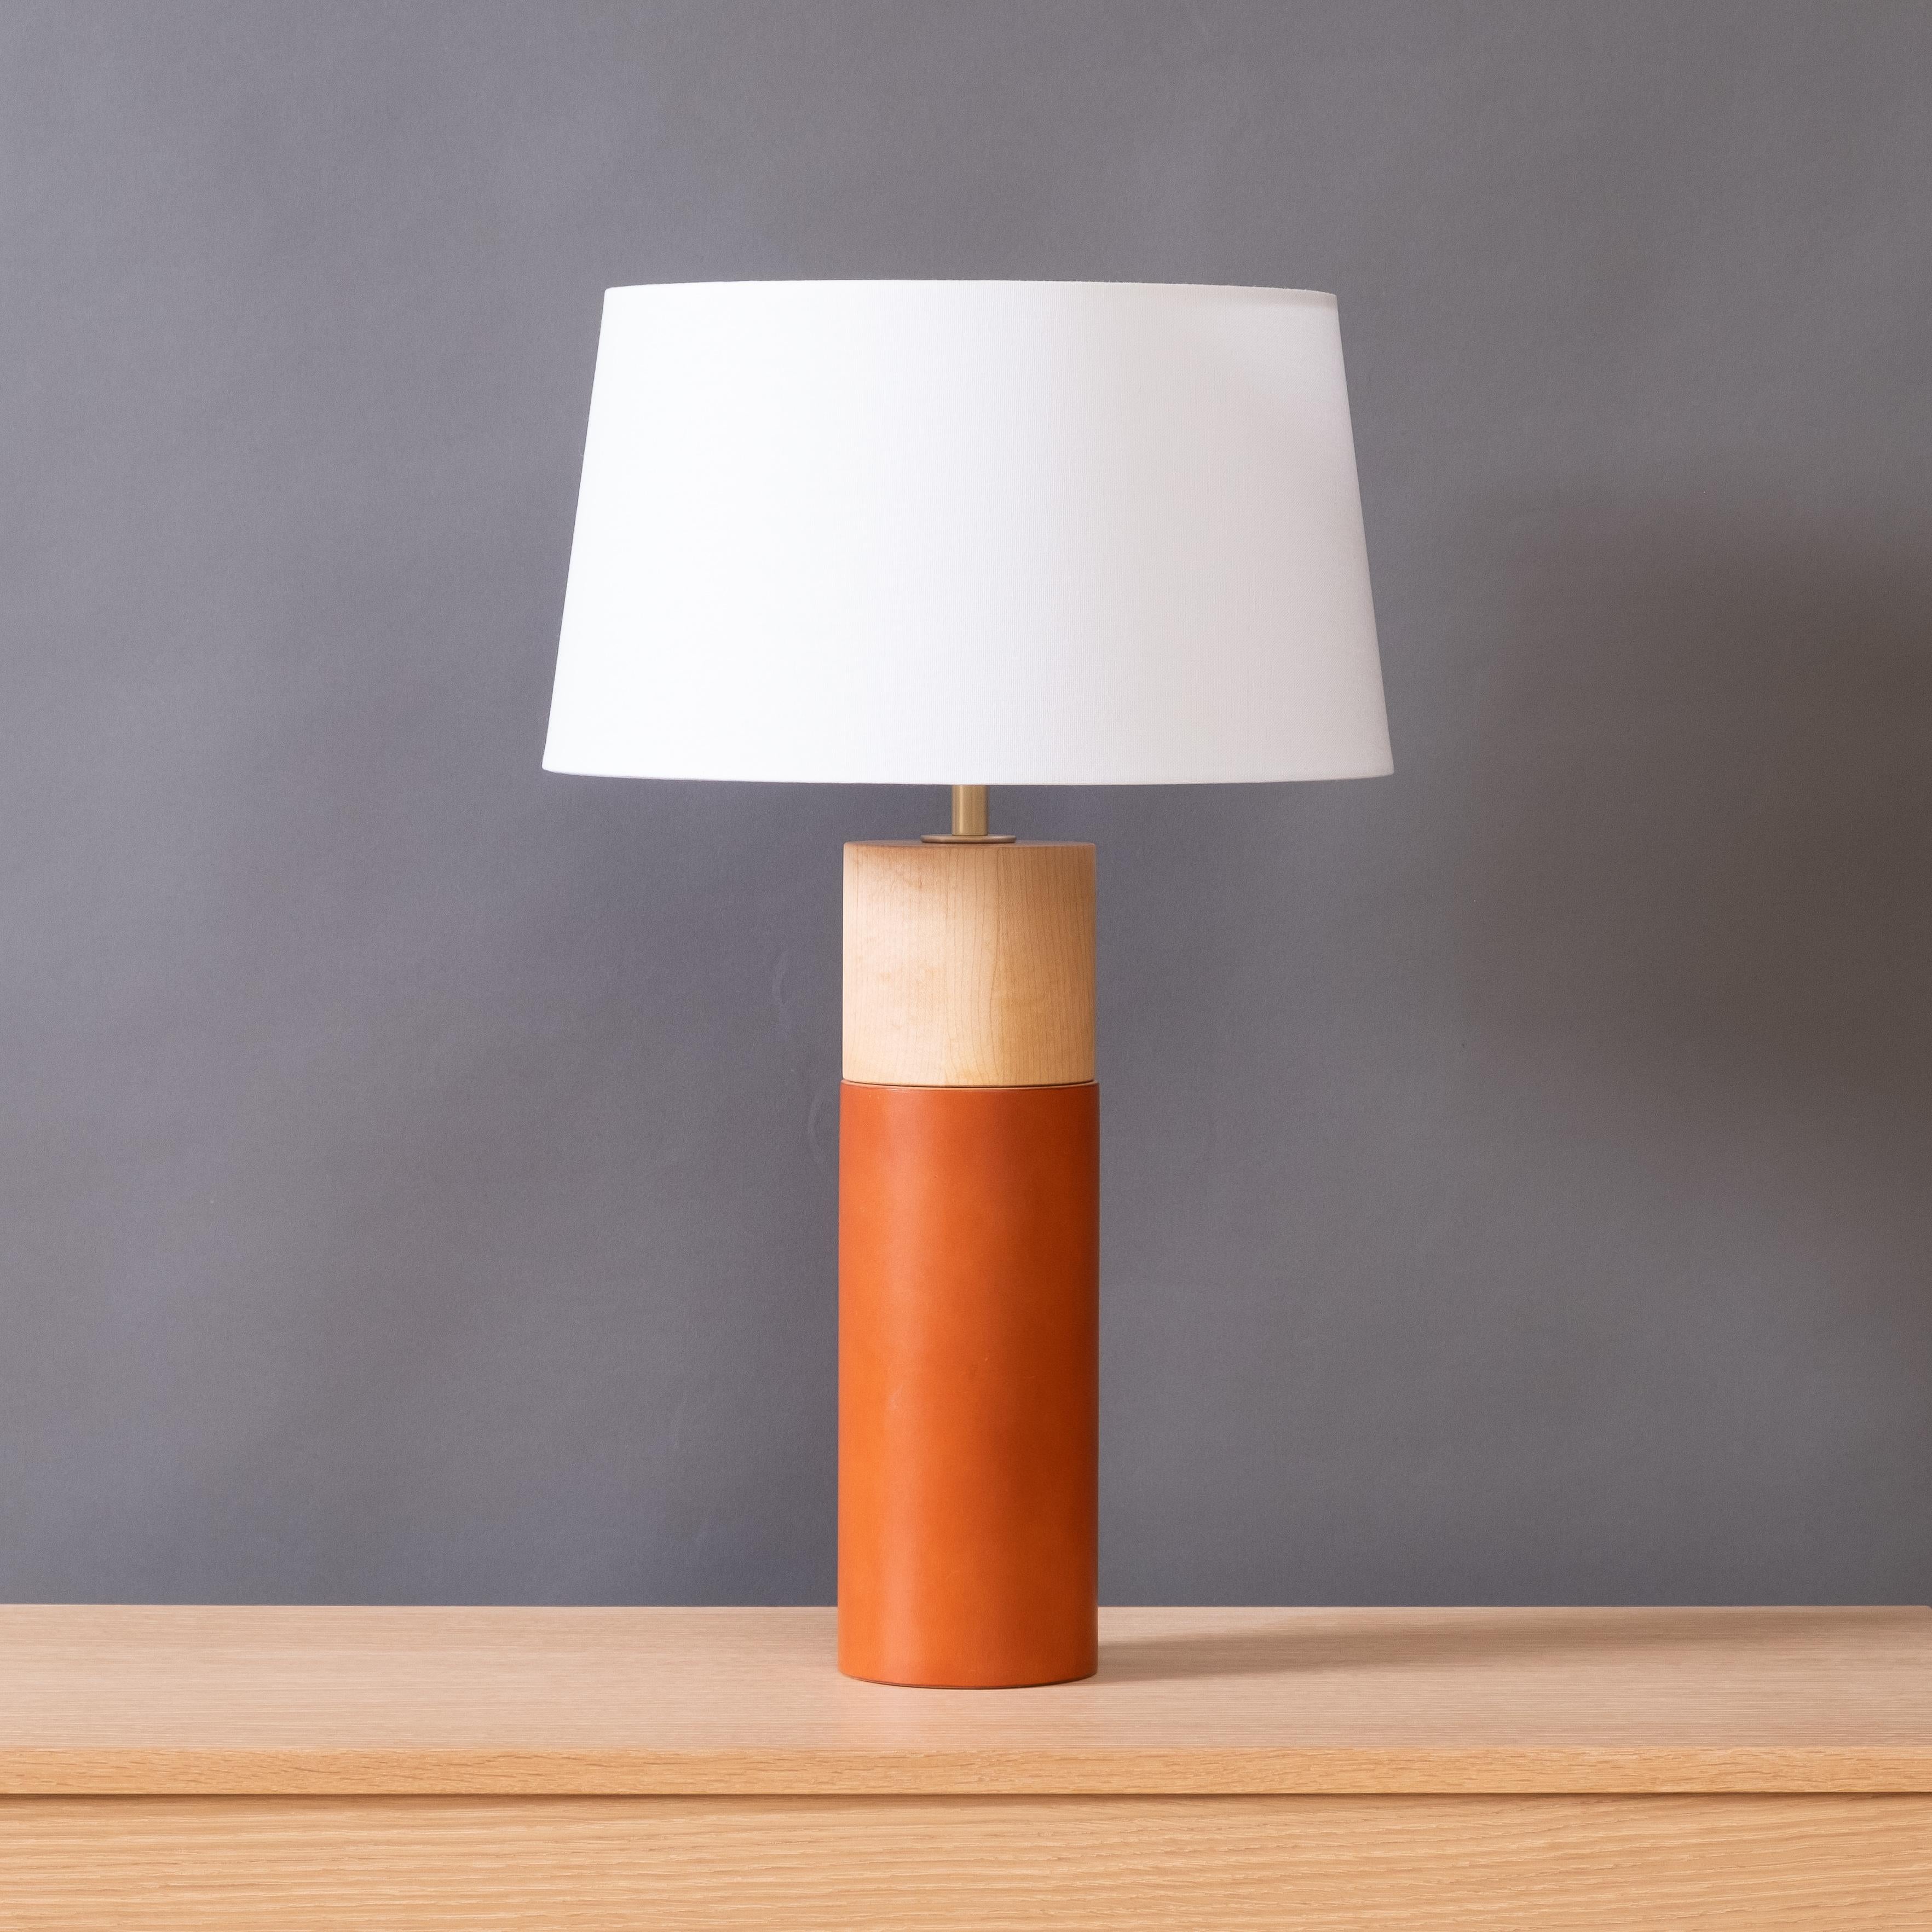 La lampe de table Capsule associe des formes minimalistes à des matériaux naturels richement texturés. Un cuir anglais épais enveloppe la partie inférieure du corps en bois tourné, contrastant avec le bois huilé exposé dans la partie supérieure. La